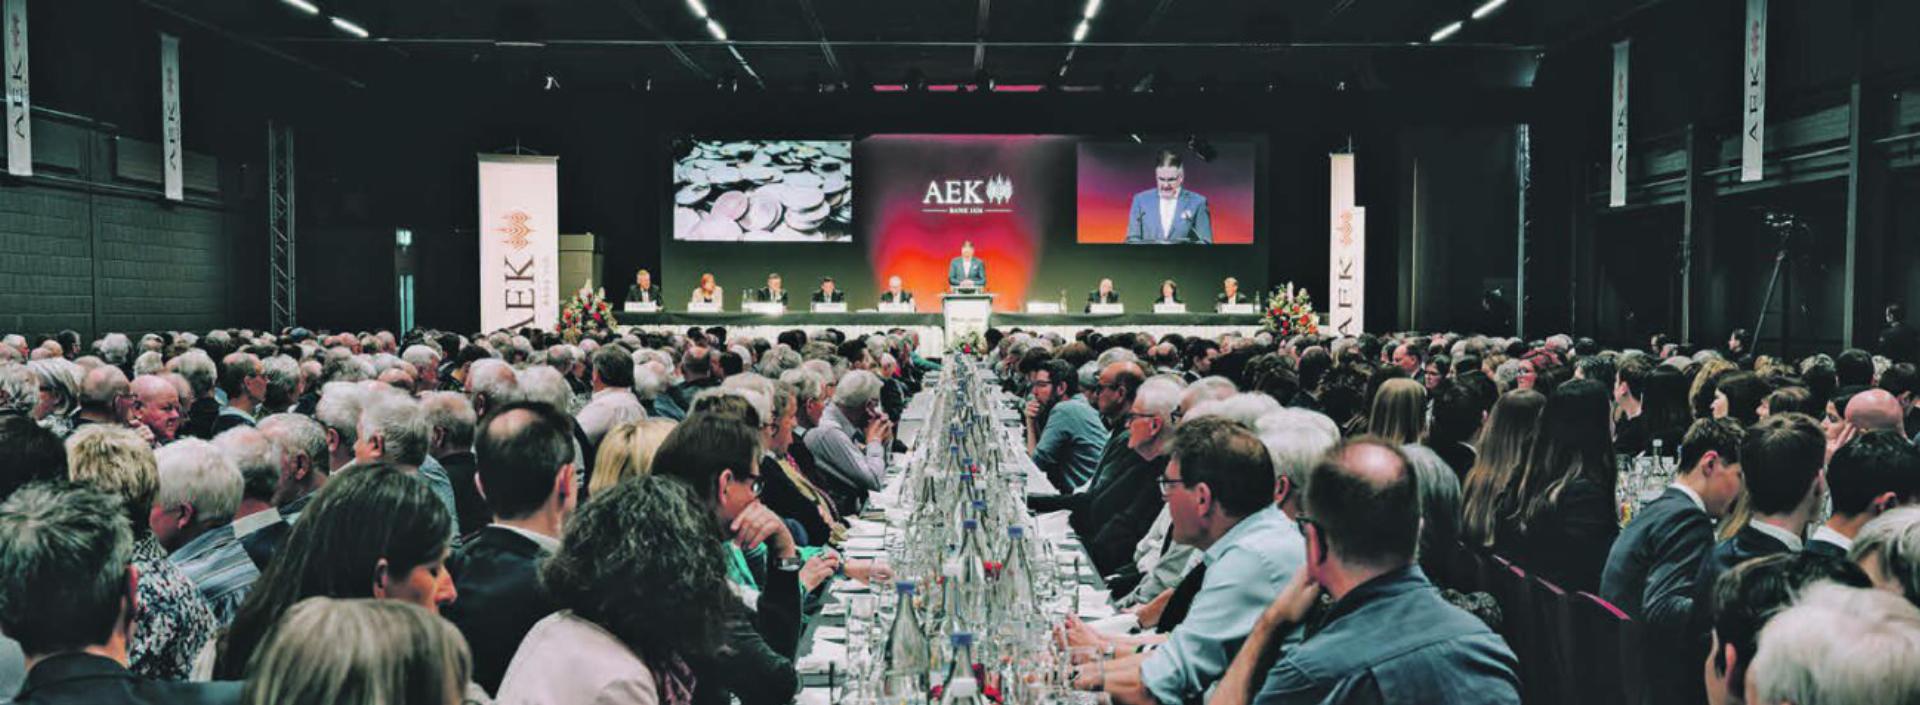 Cajetan Maeder, Präsident des Verwaltungsrates der AEK Bank sprach in der grossen Halle des Messezentrums Thun-Expo auch über die Wichtigkeit von guten, persönlichen Kundenbeziehungen. Und darüber, wie wertvoll die Genossenschafter:innen als Botschafter:innen für die AEK Bank sind.